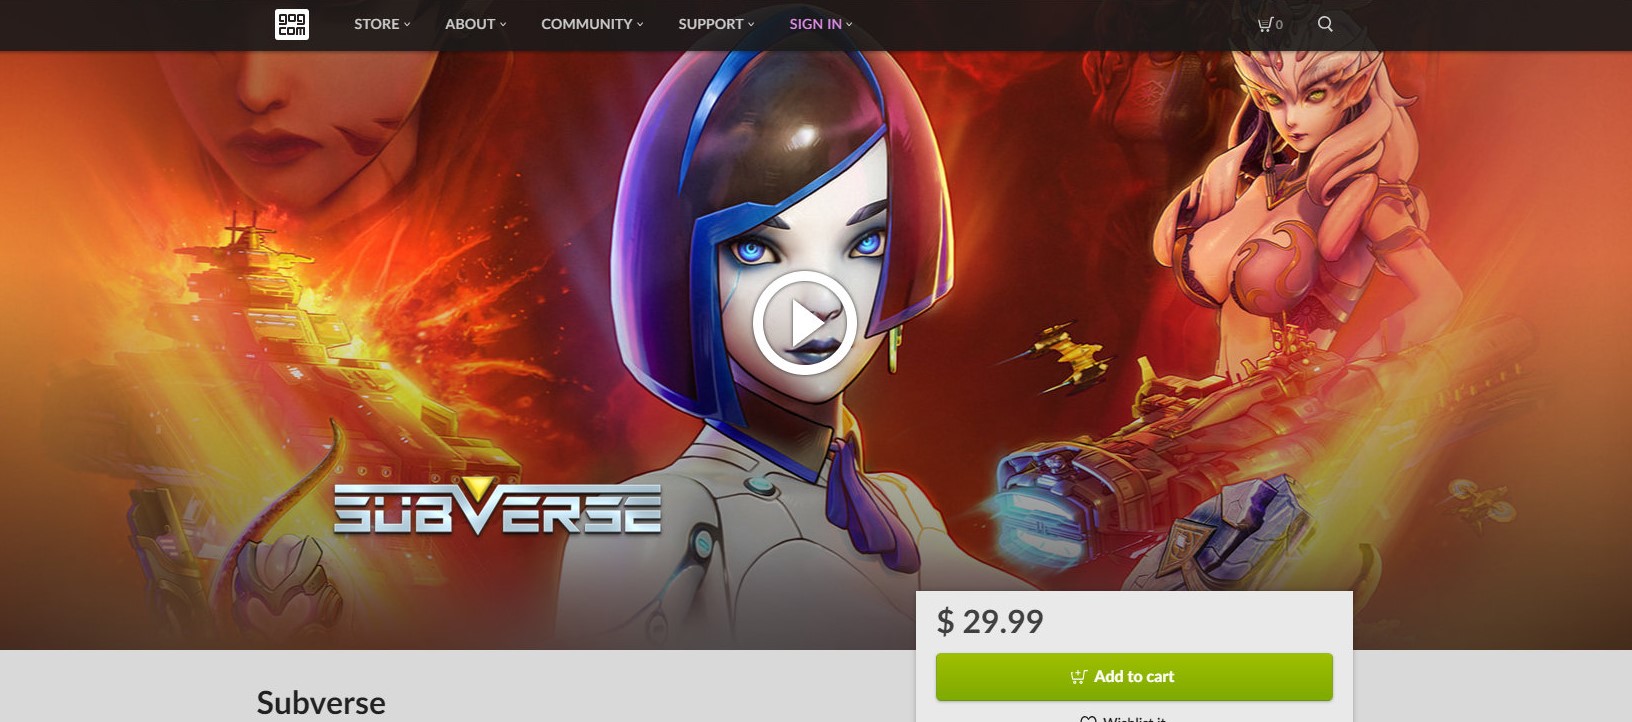 马头社大作《Subverse》登陆GOG 售价30美元 但是锁区